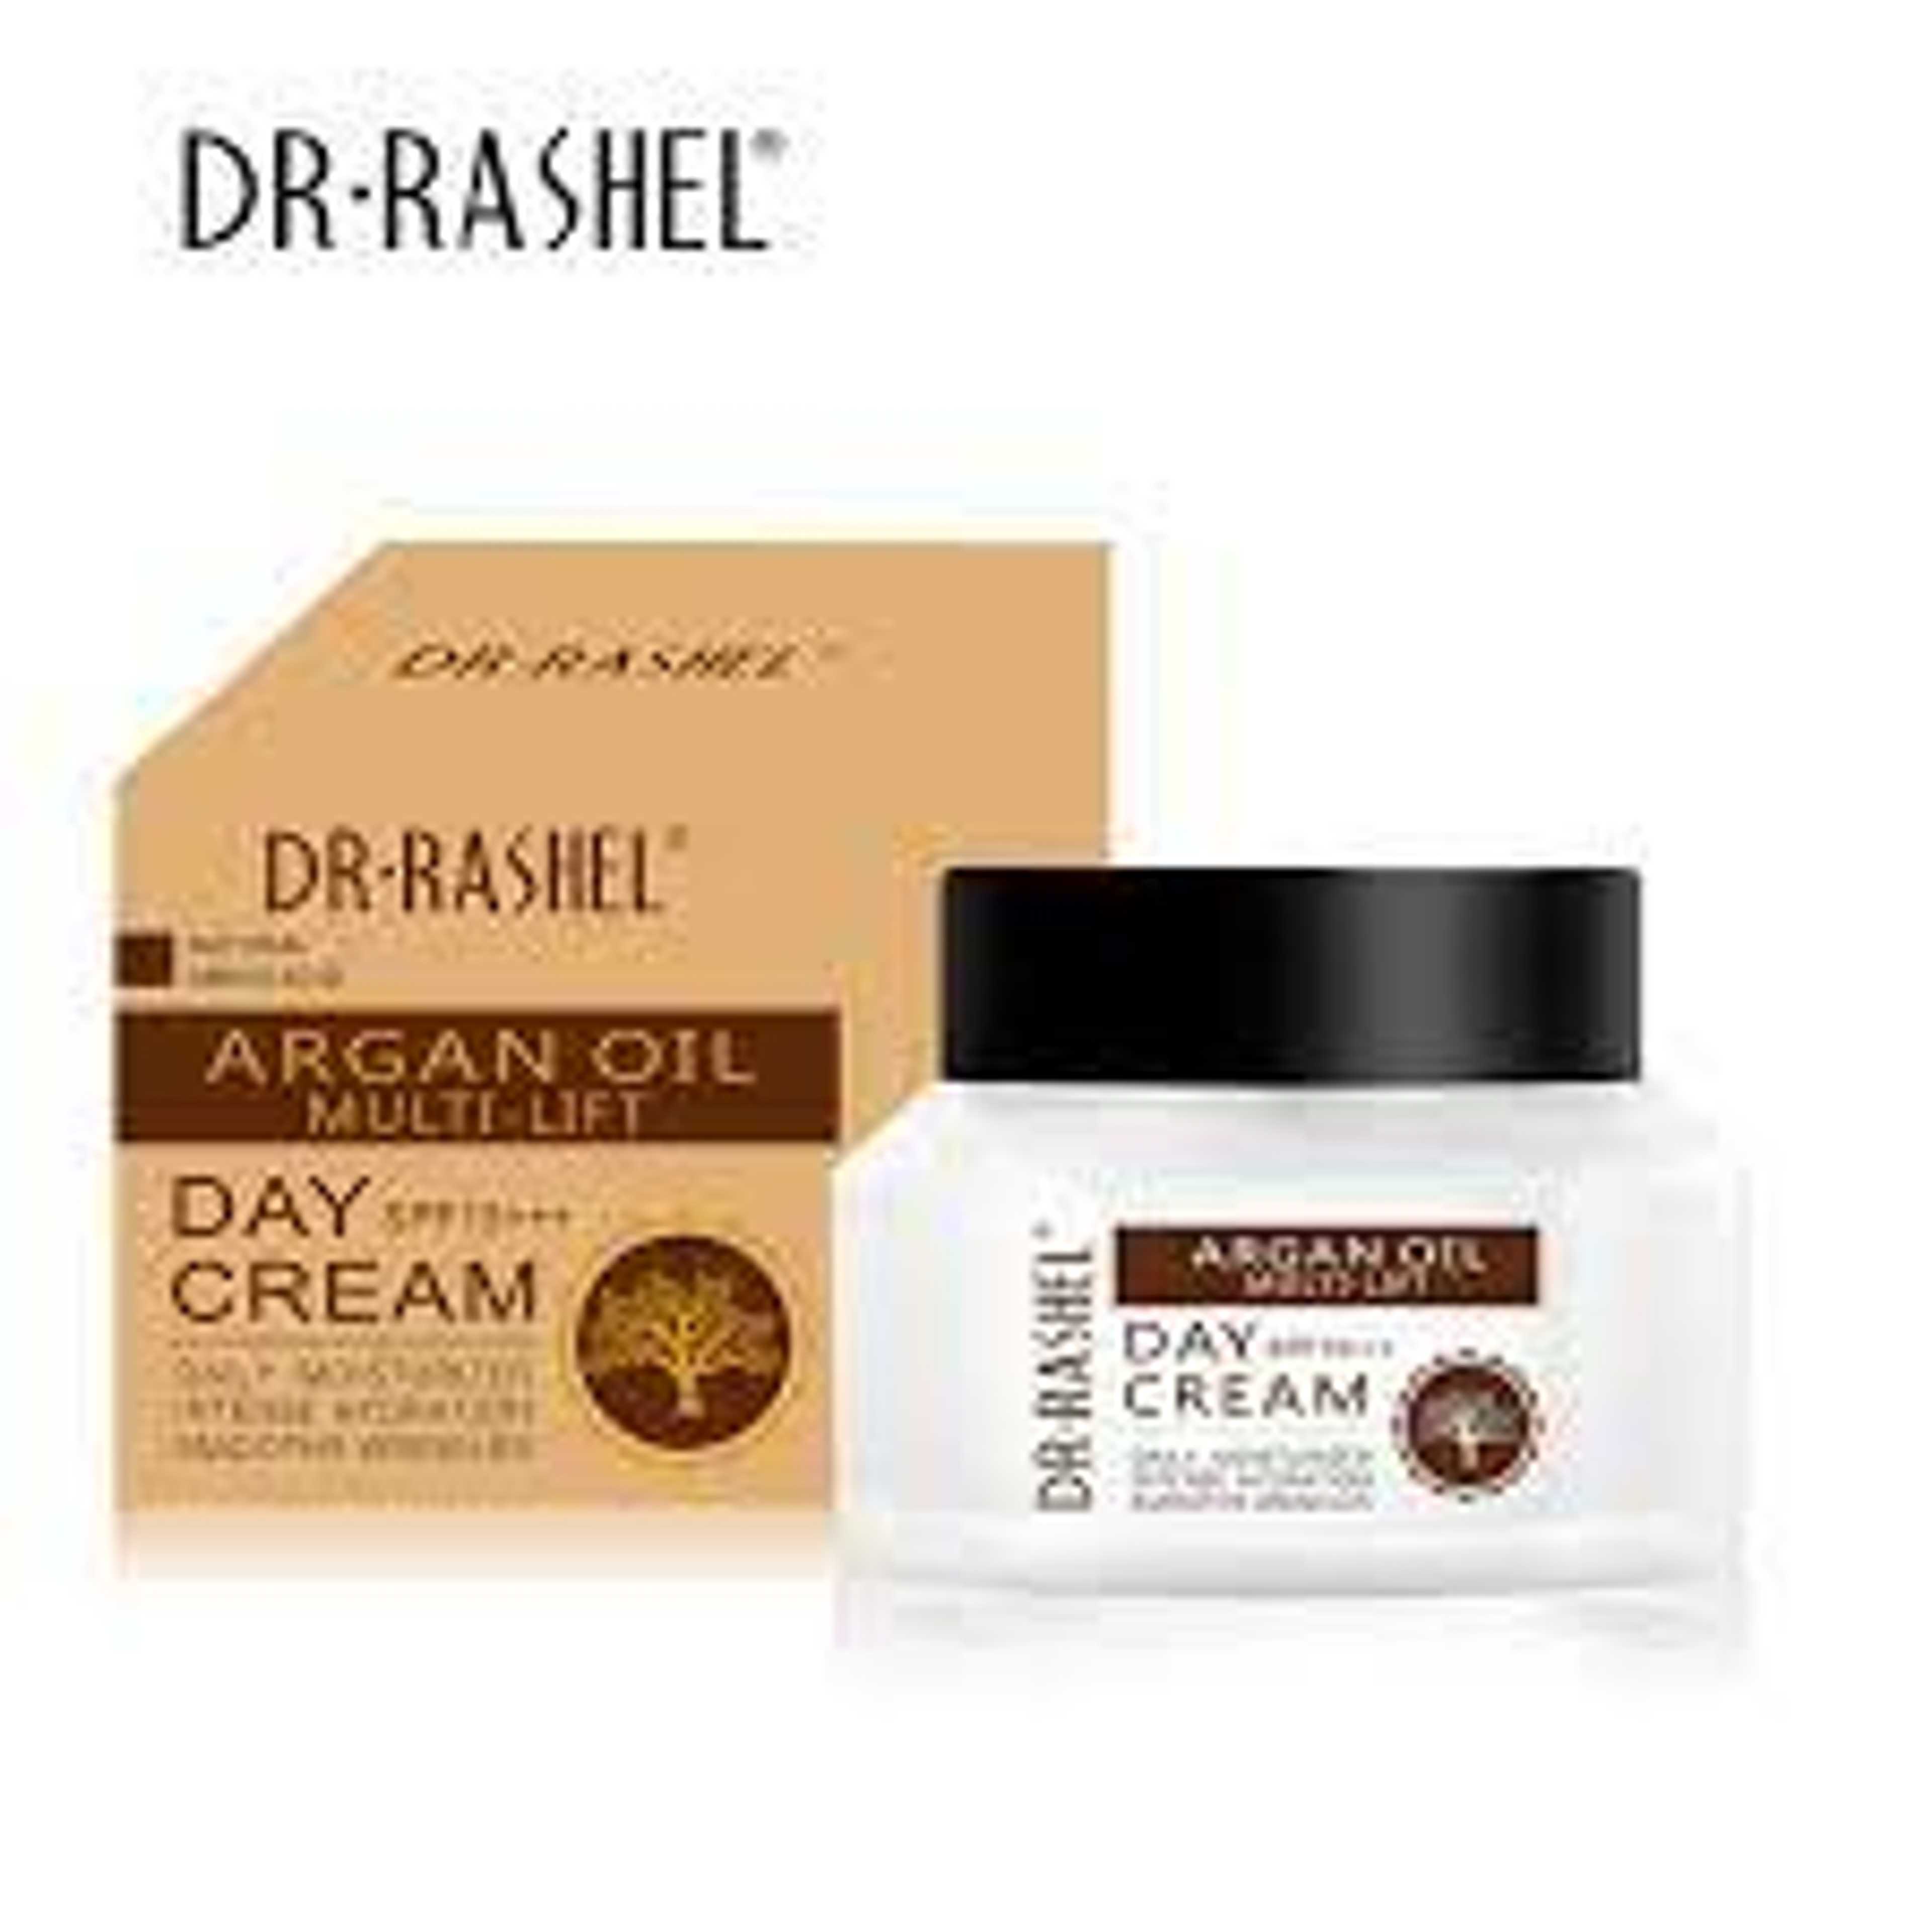 Dr Rashel Argan Oil Multi Lift Night Cream, 20g